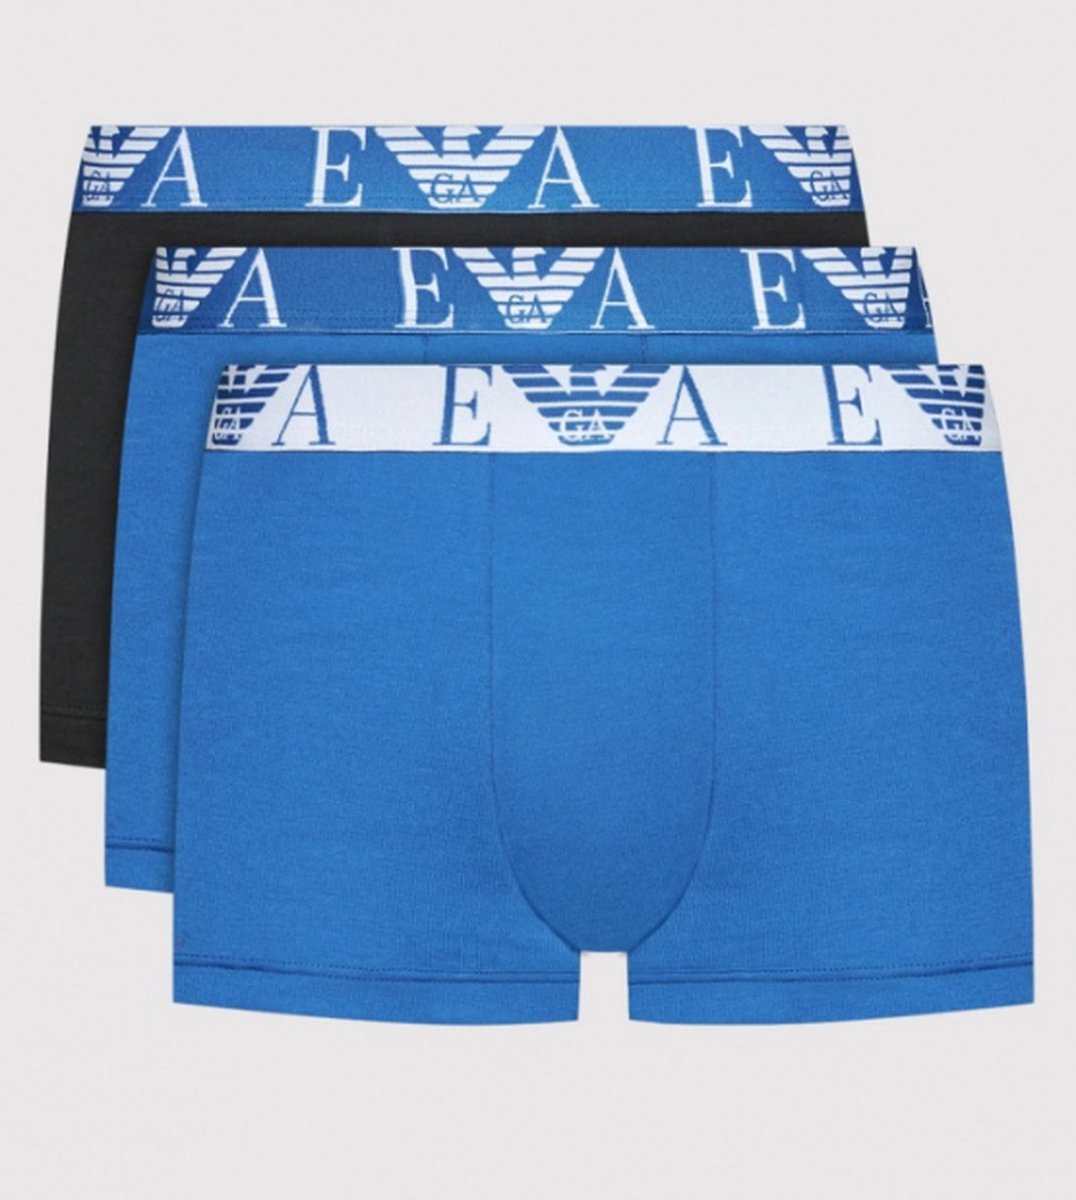 Emporio Armani 3-pack boxershorts bluette/nero/bluette - Emporio Armani